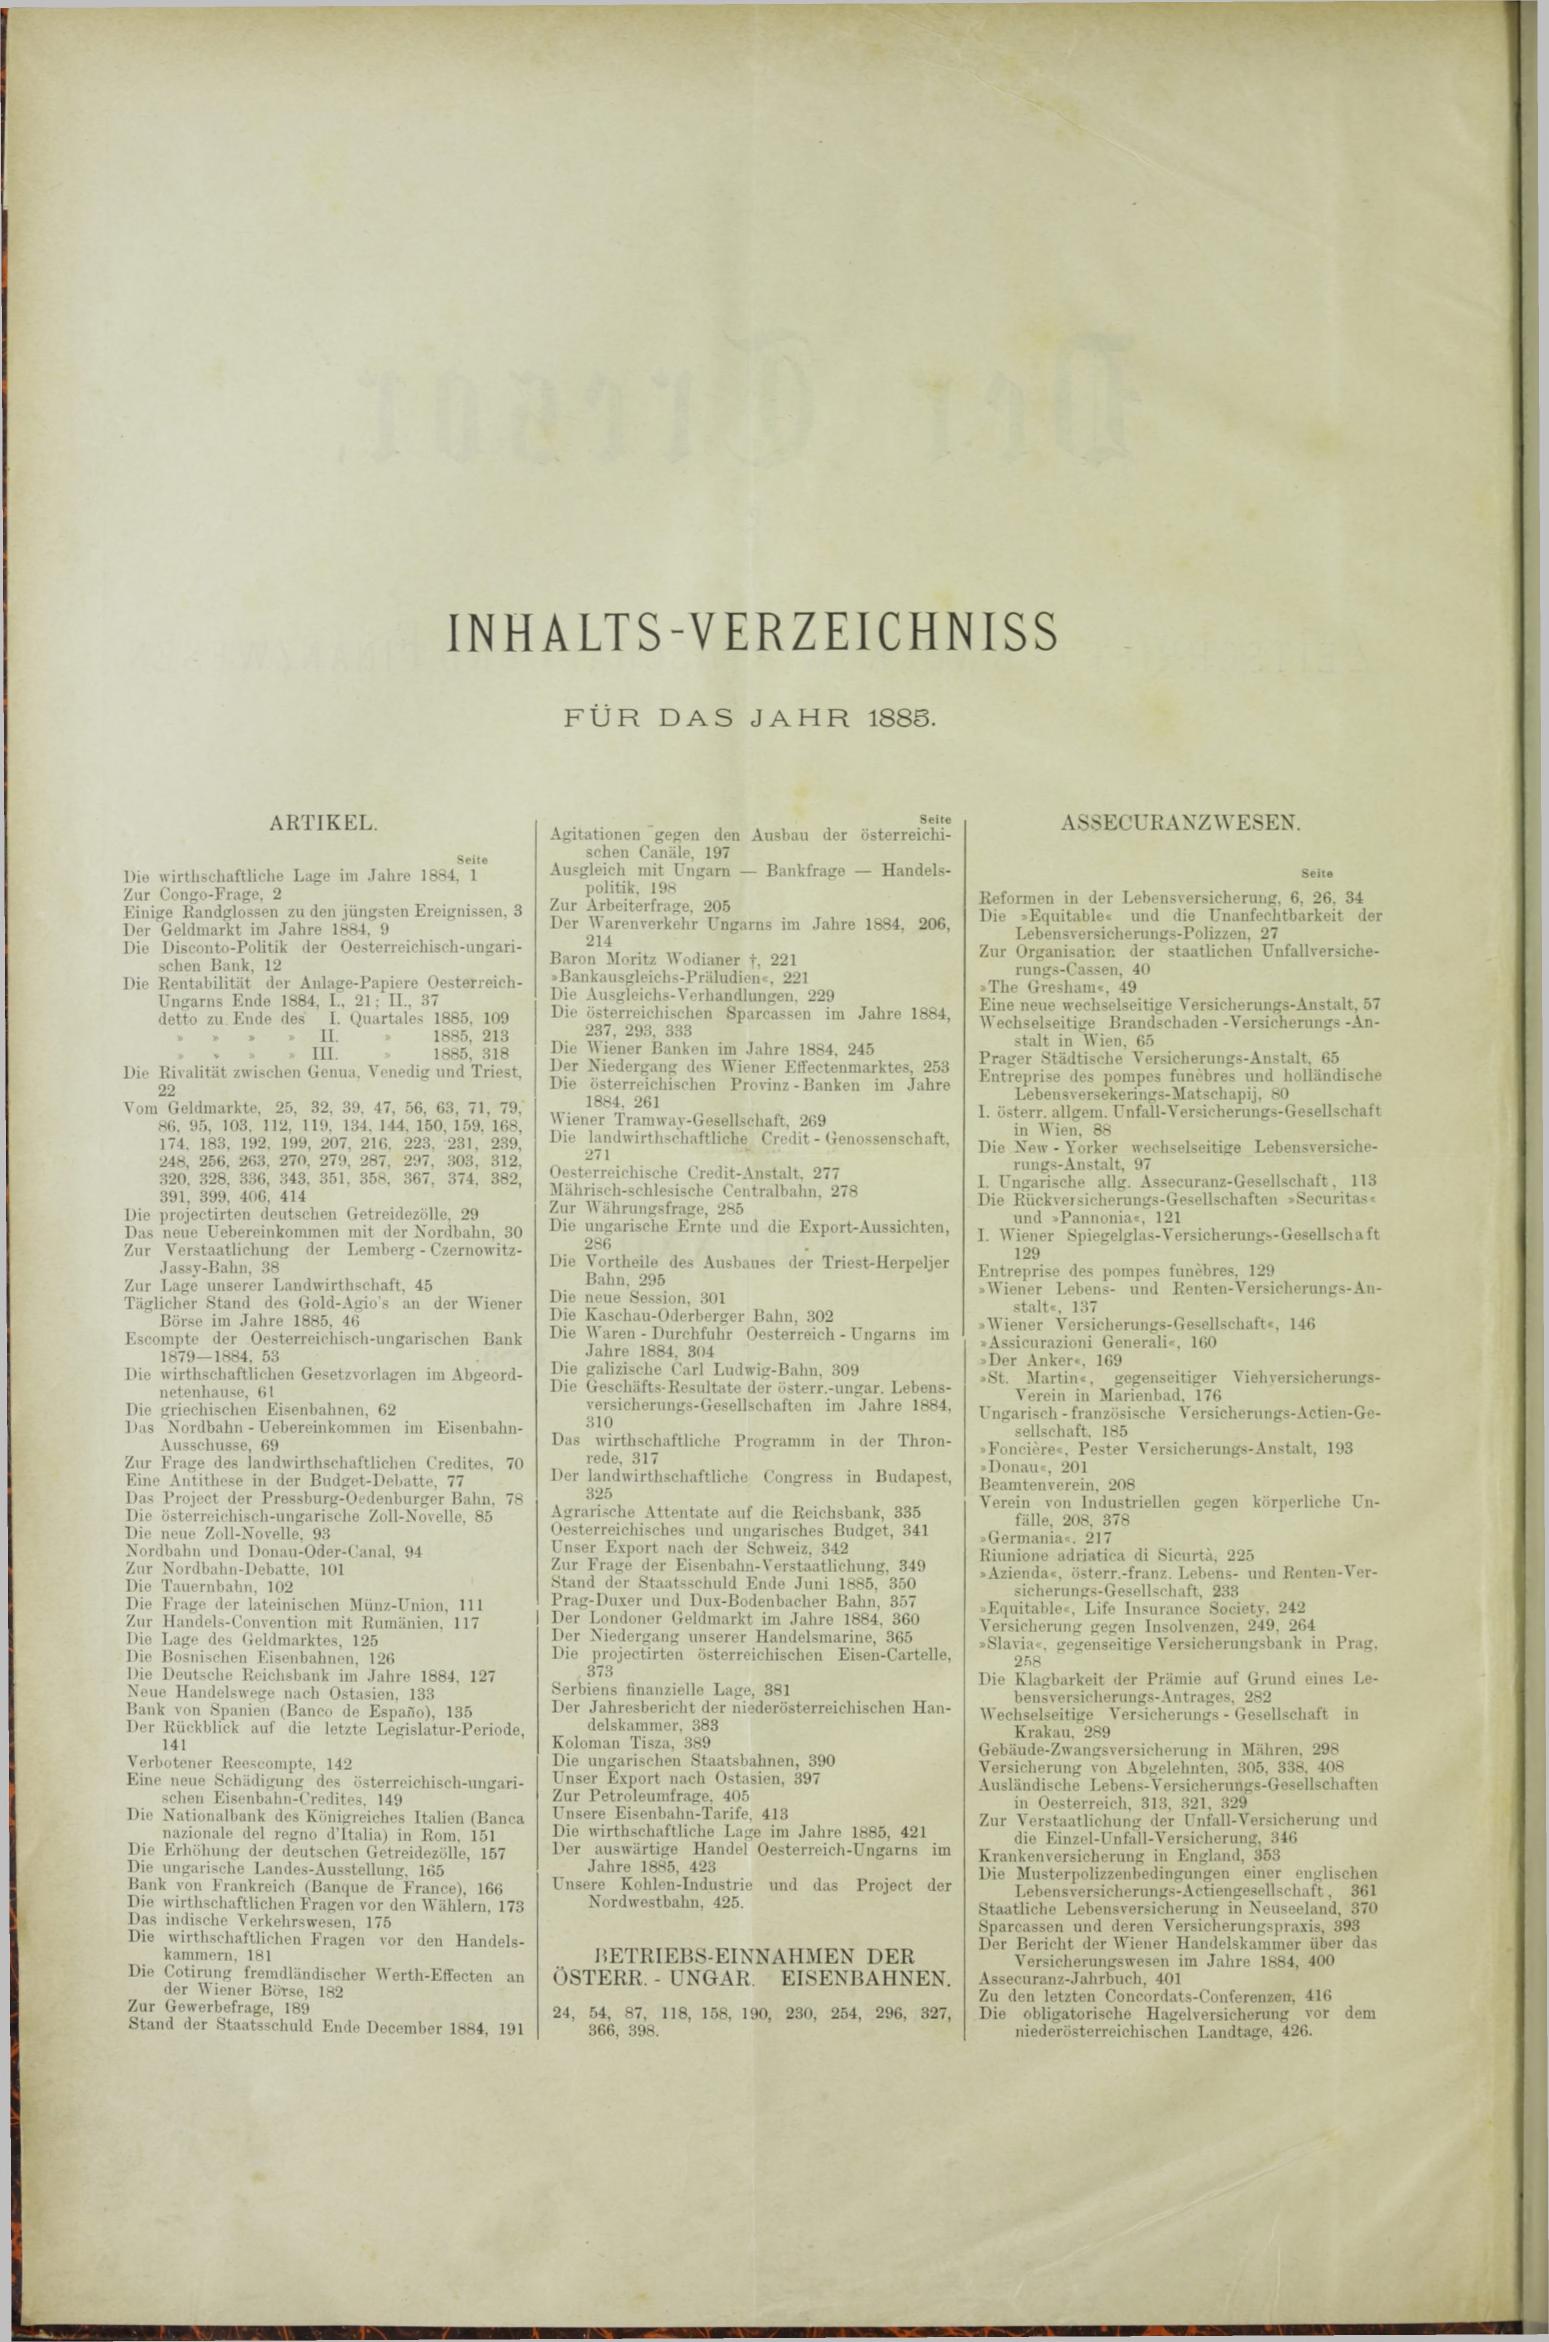 Der Tresor 01.01.1885 - Seite 10